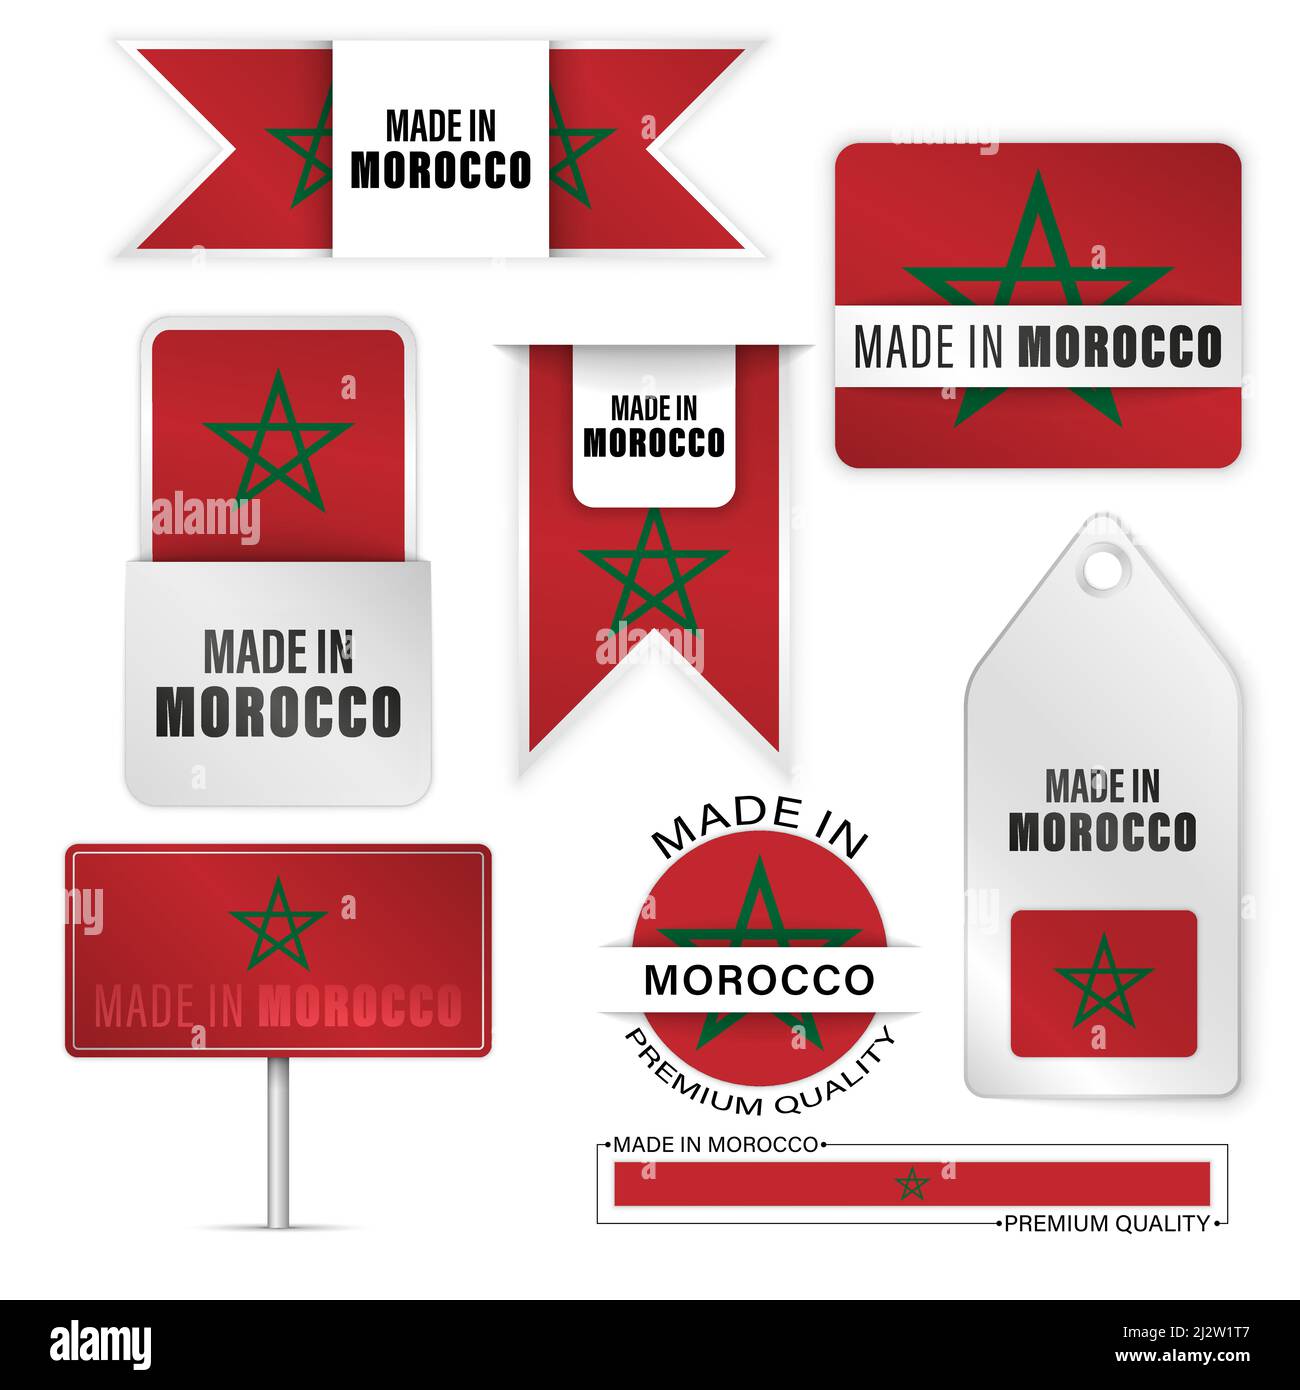 Realizzato in Marocco, set di etichette e grafica. Alcuni elementi di impatto per l'uso che si desidera fare di esso. Illustrazione Vettoriale